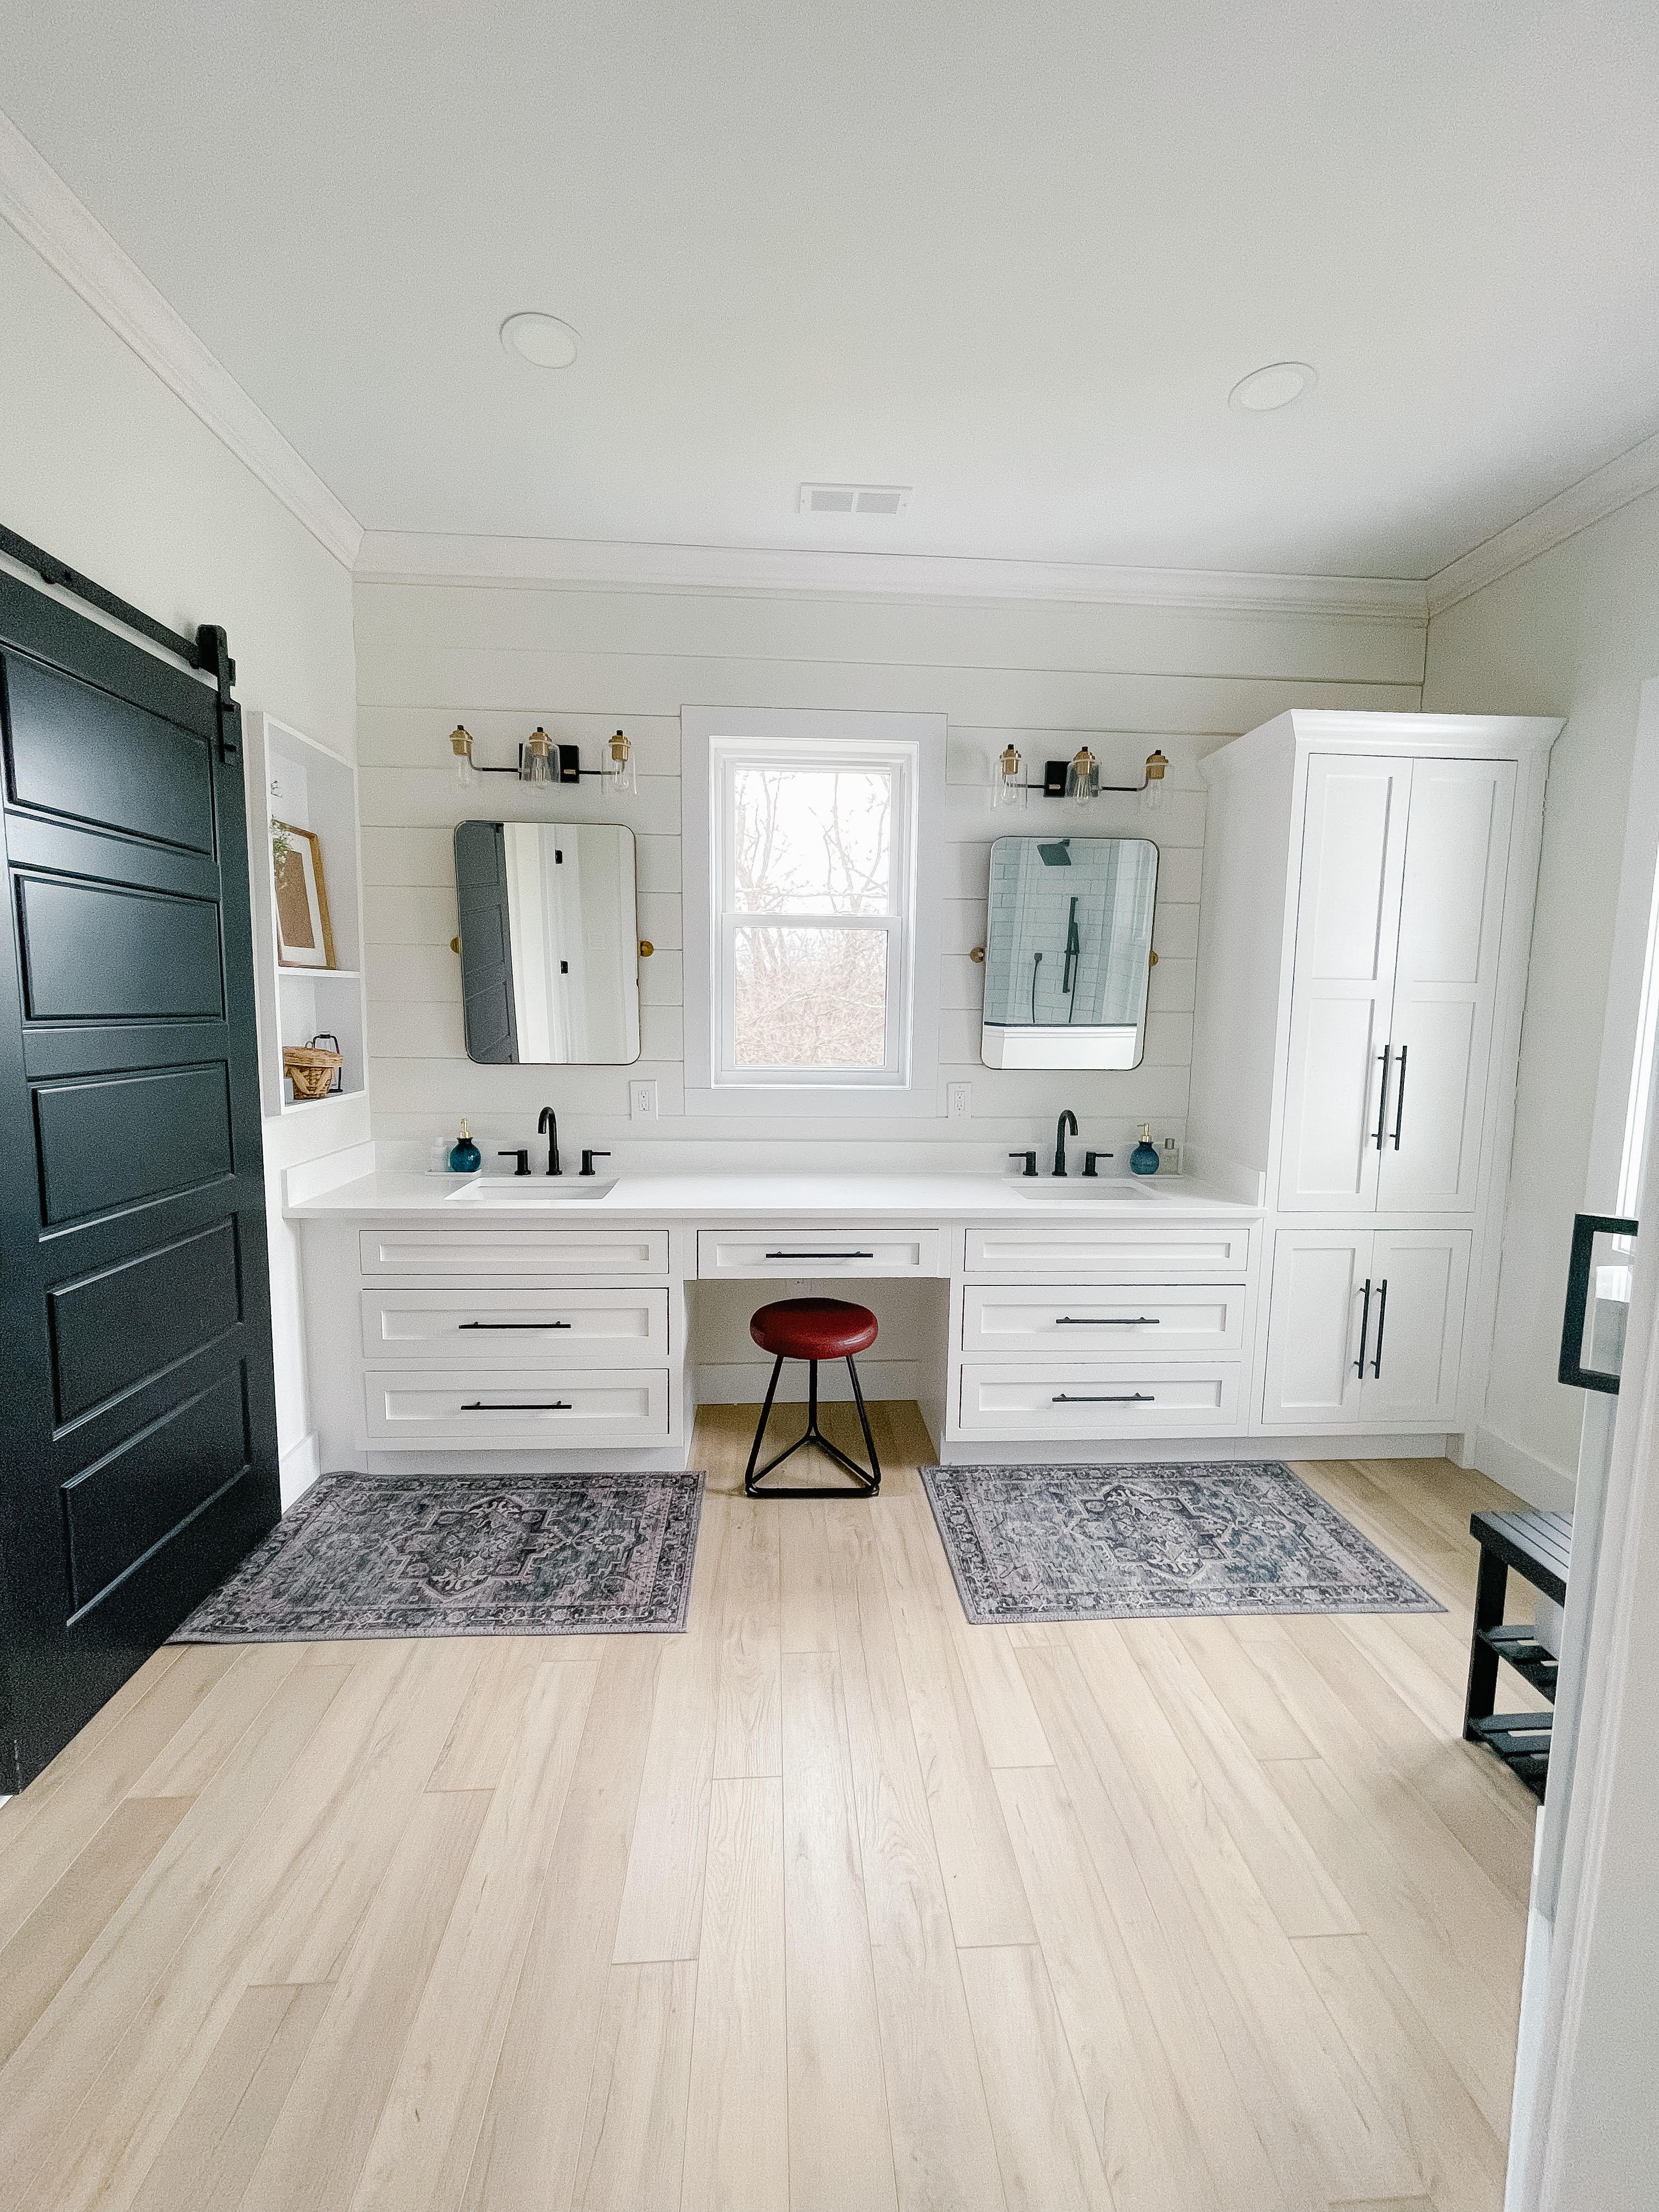 Light colored vanity and floors with dark door